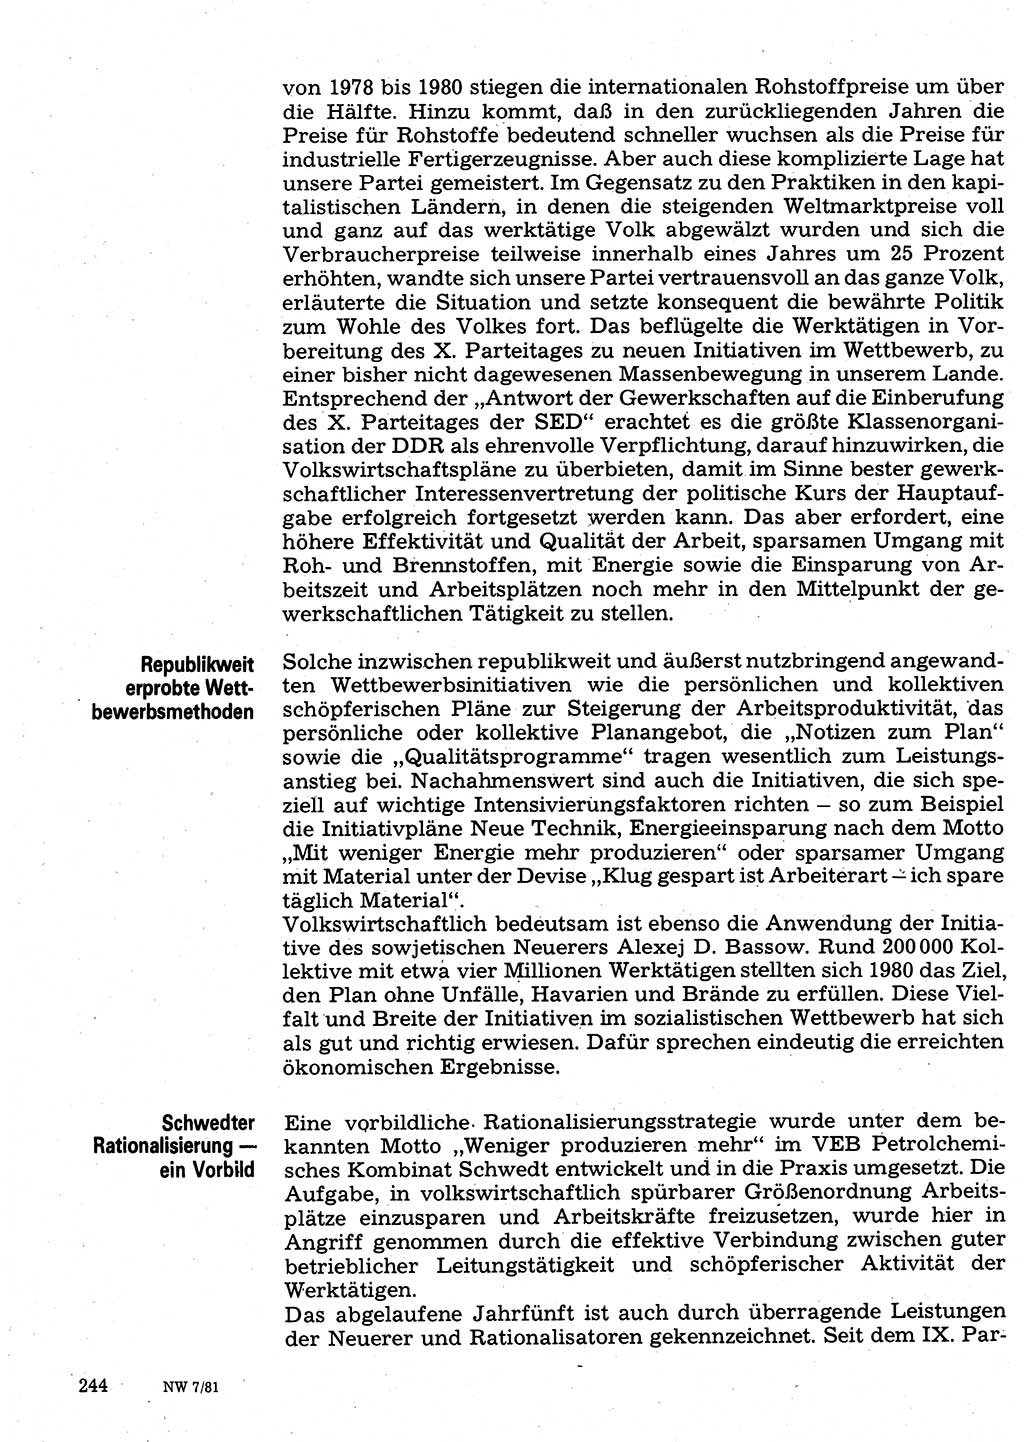 Neuer Weg (NW), Organ des Zentralkomitees (ZK) der SED (Sozialistische Einheitspartei Deutschlands) für Fragen des Parteilebens, 36. Jahrgang [Deutsche Demokratische Republik (DDR)] 1981, Seite 244 (NW ZK SED DDR 1981, S. 244)